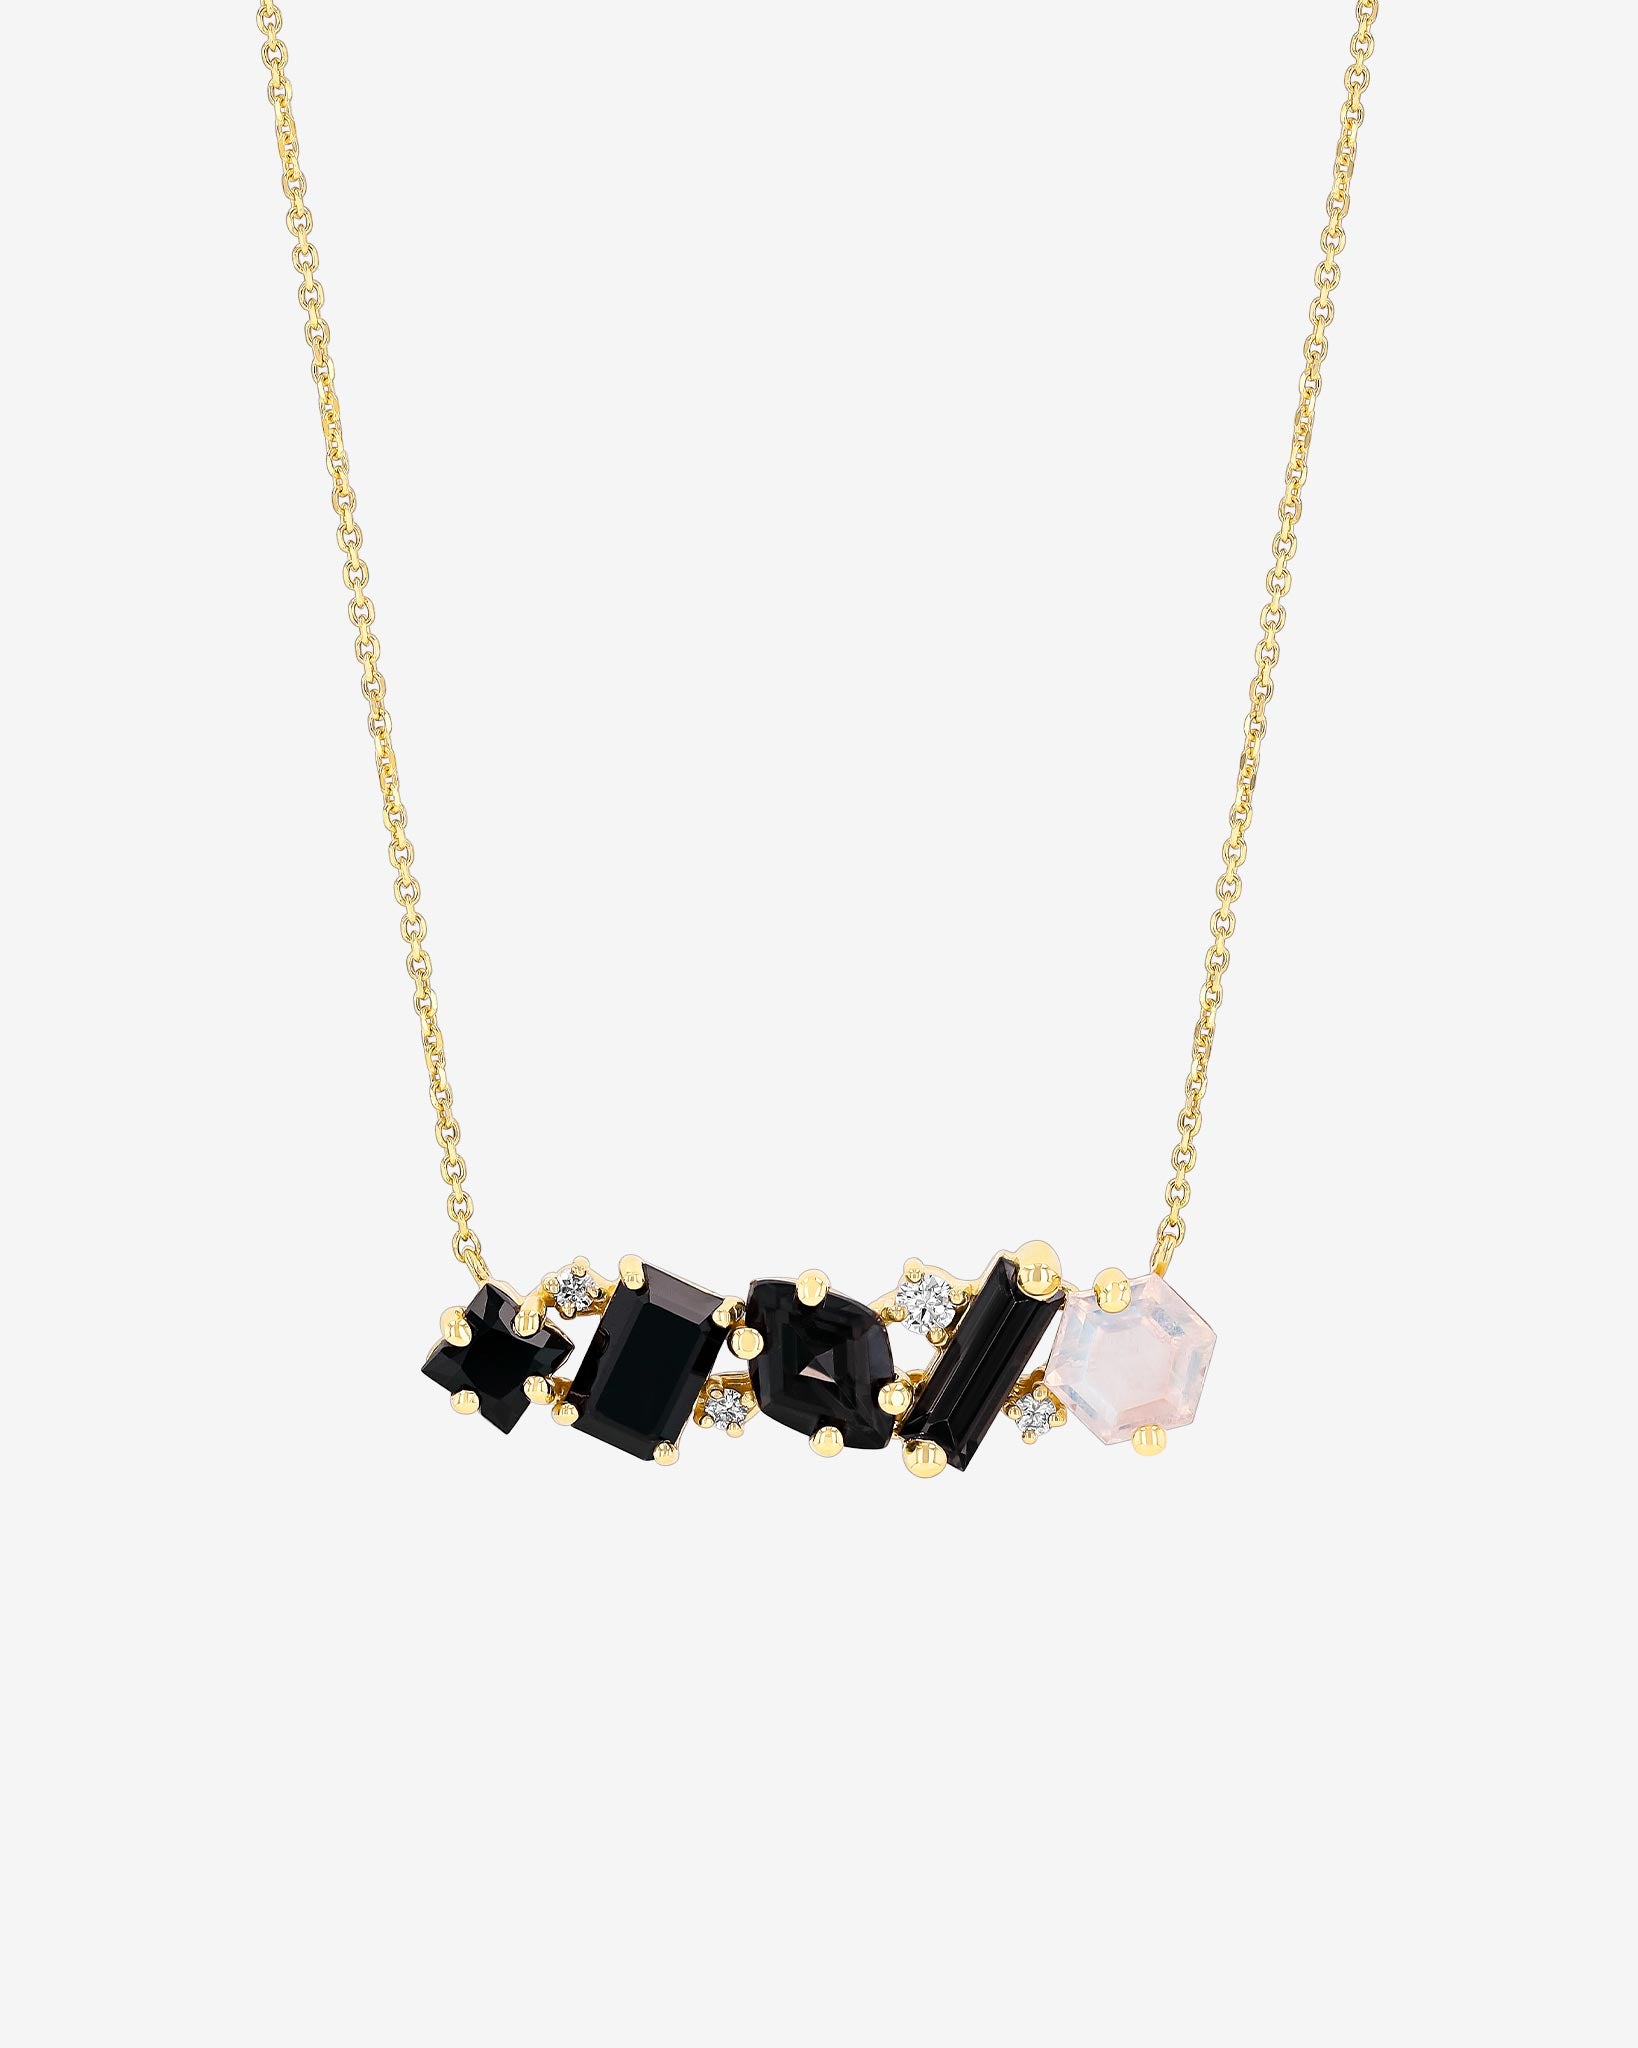 Shop Necklaces & Pendants for Women | SUZANNE KALAN®